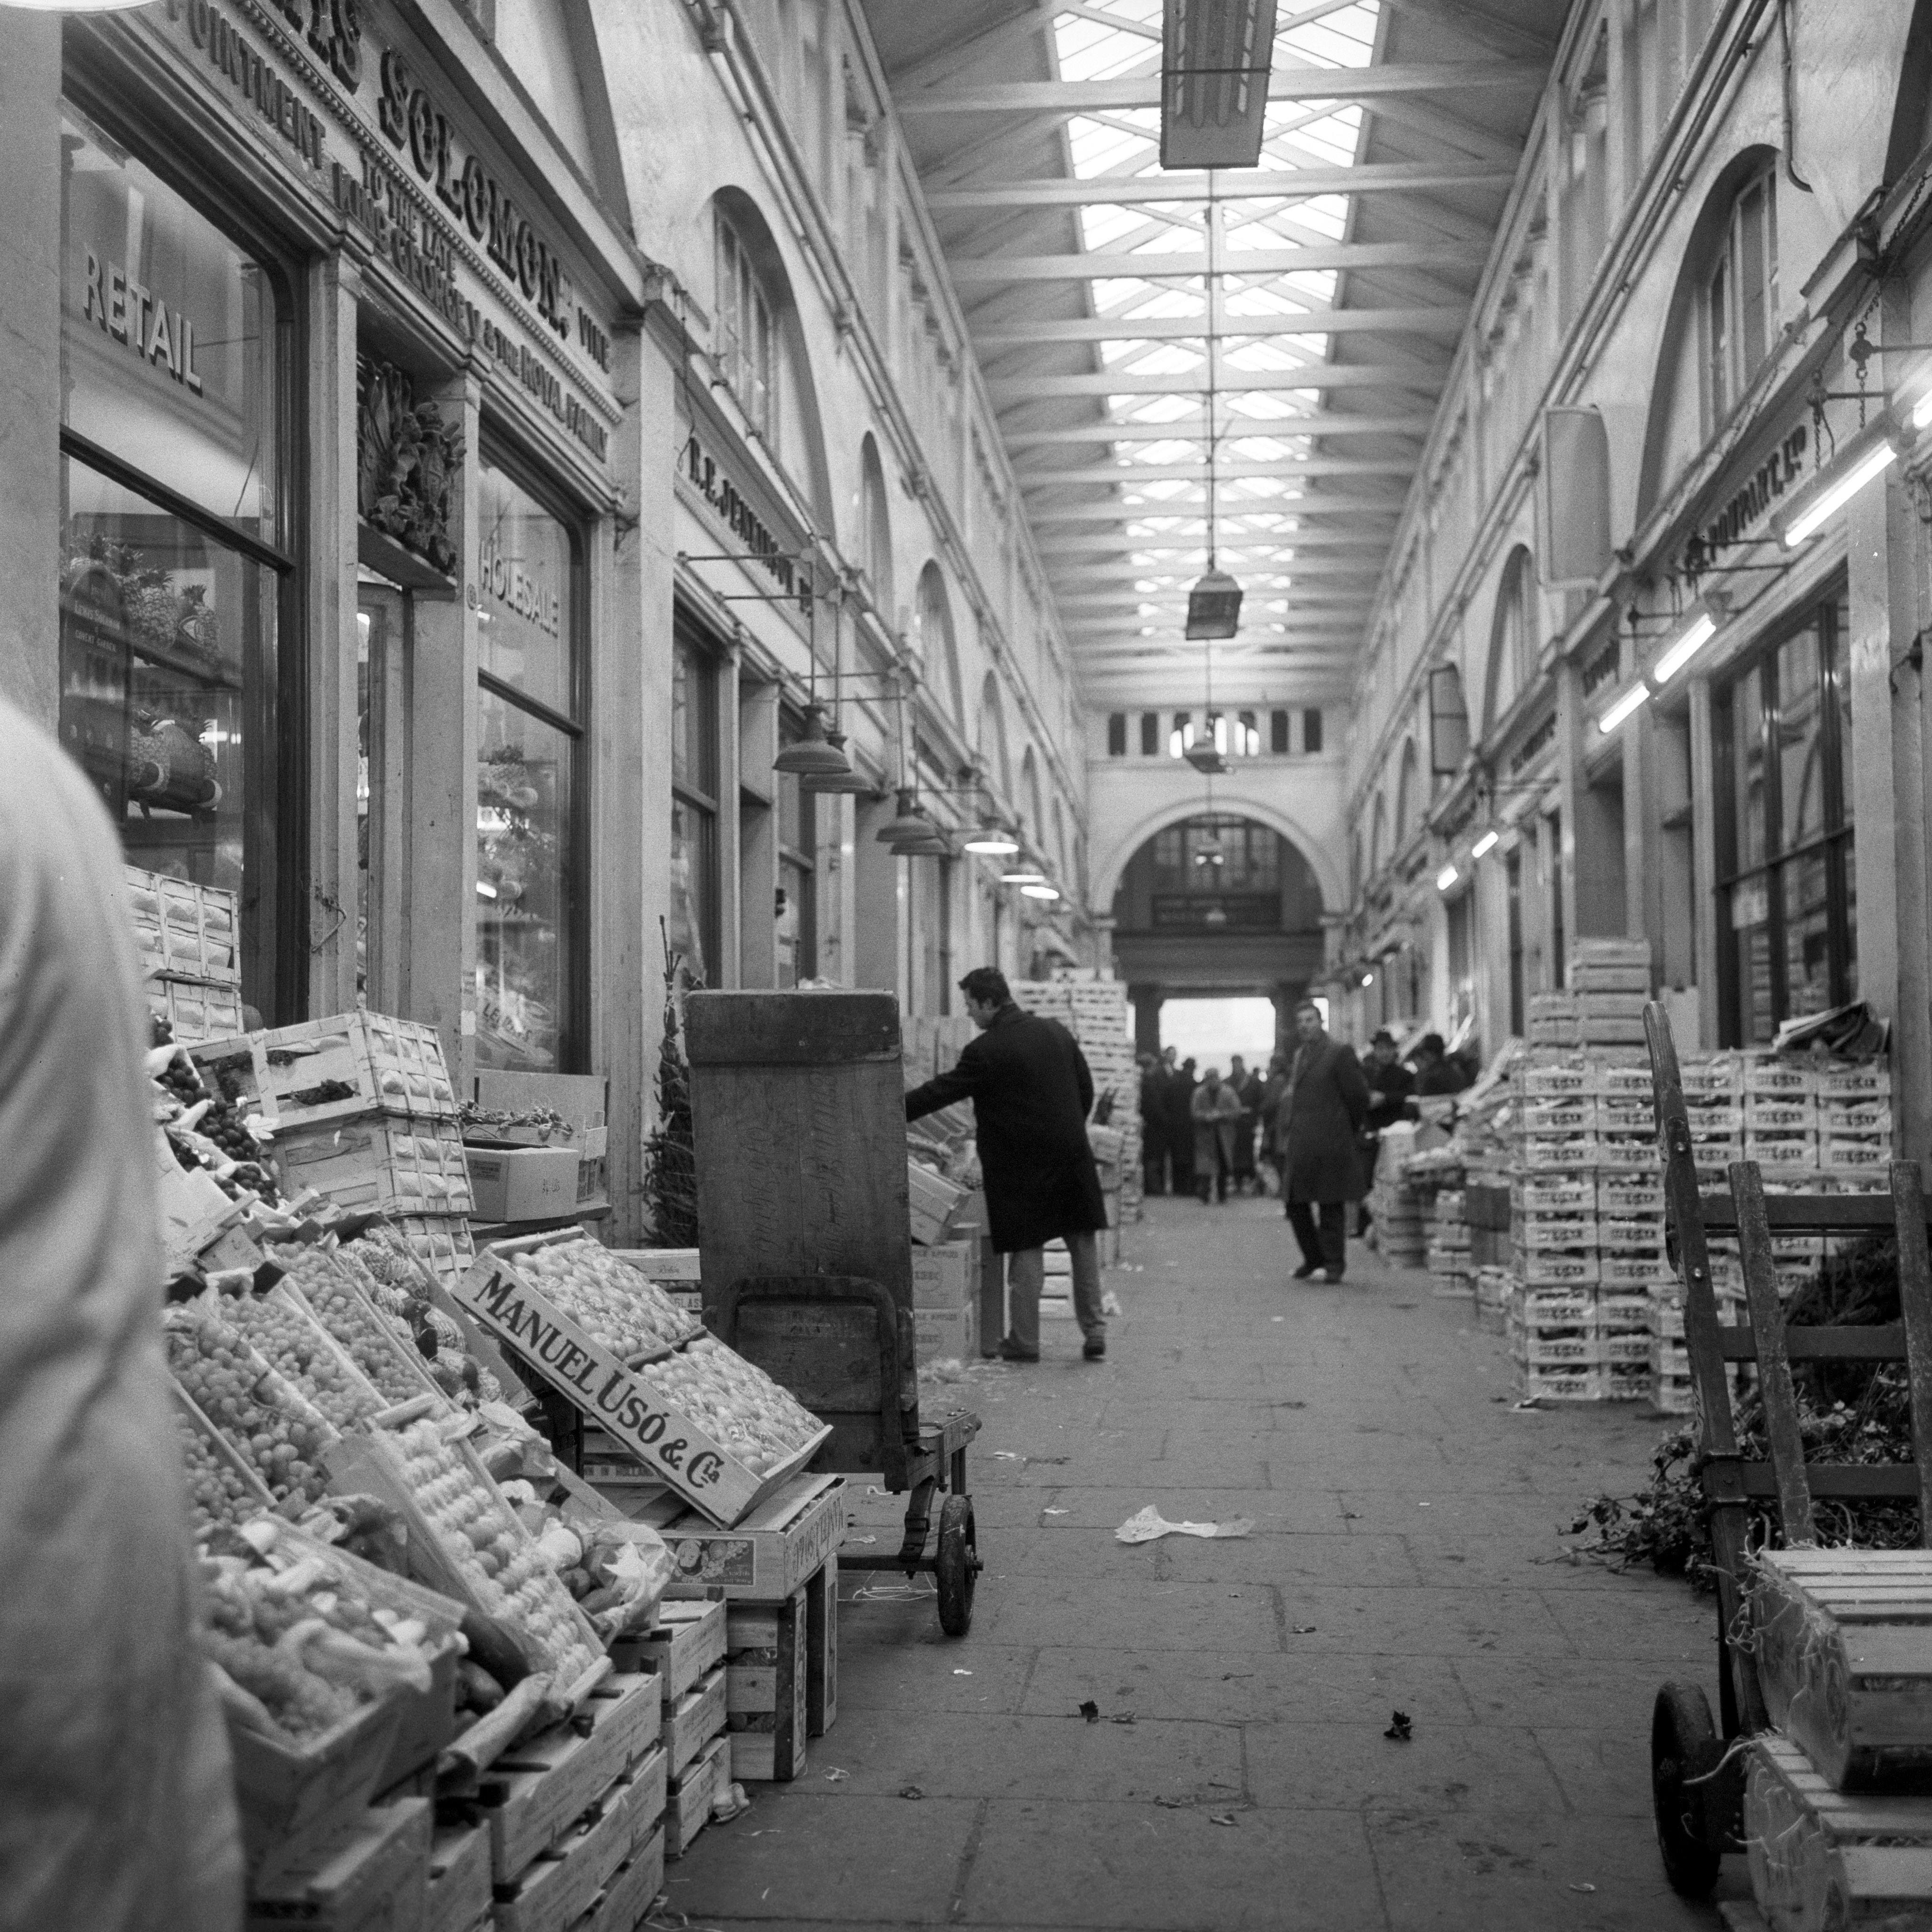 Inside Covent Garden market, 1963